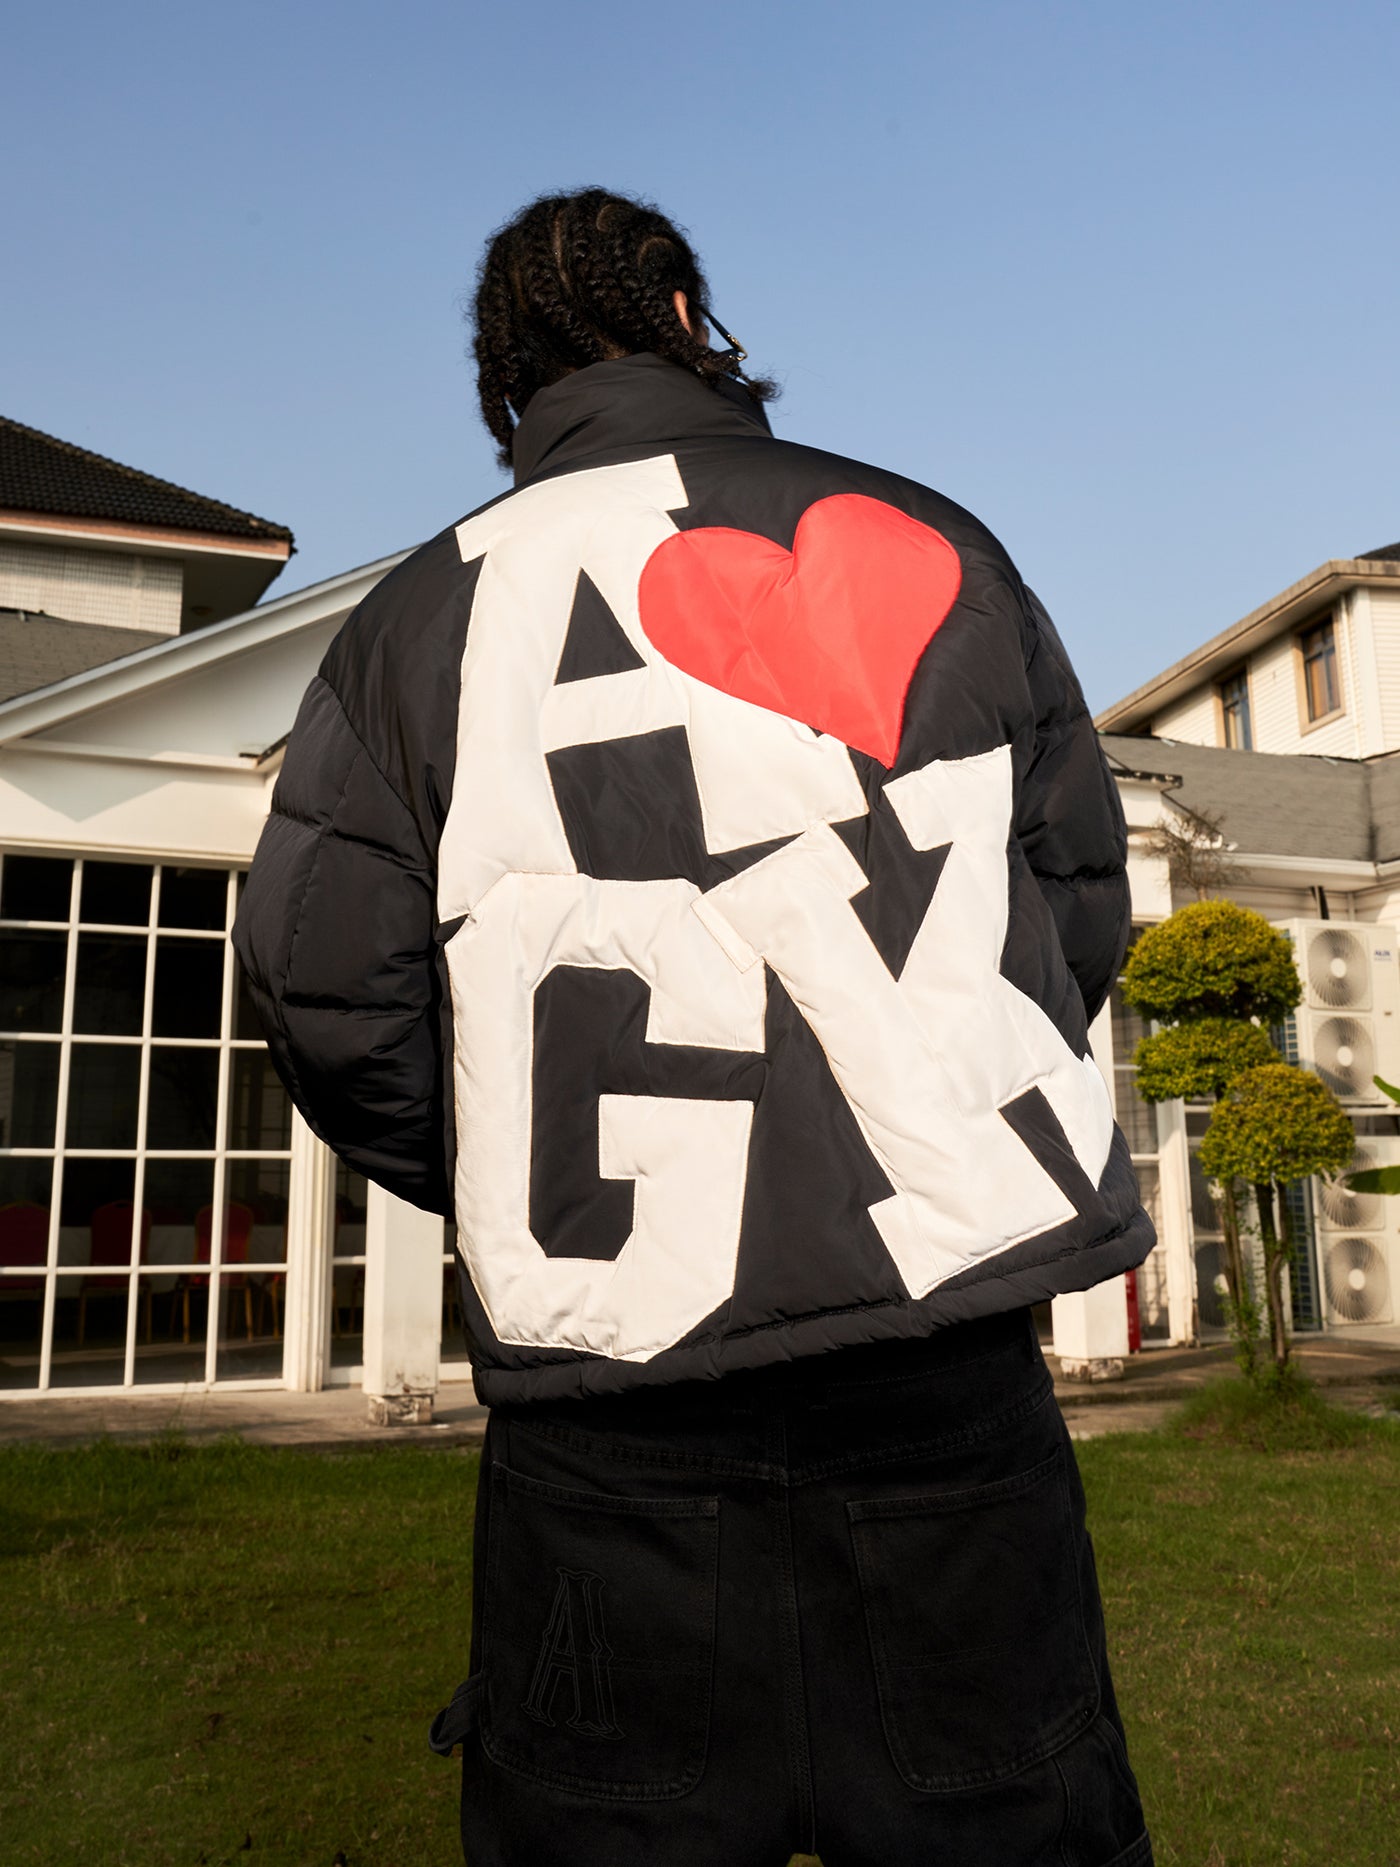 DONCARE(AFGK) “Heart logo down jacket”